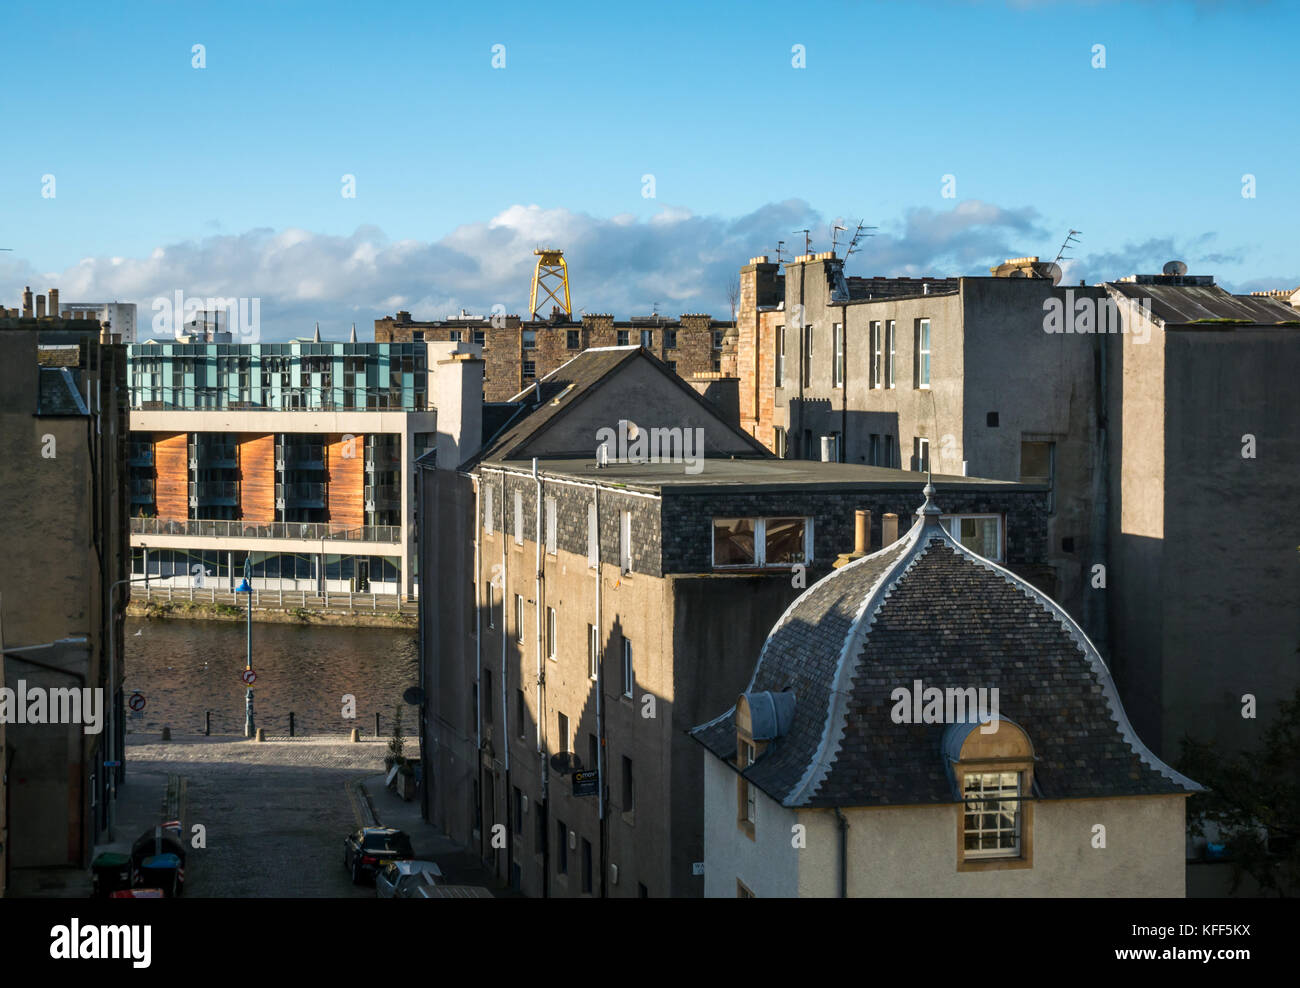 Blick über die Dächer des alten und modernen Gebäuden in Leith, Edinburgh, Schottland, Großbritannien, mit riesigen gelben wind turbine Plattform in der Ferne Stockfoto